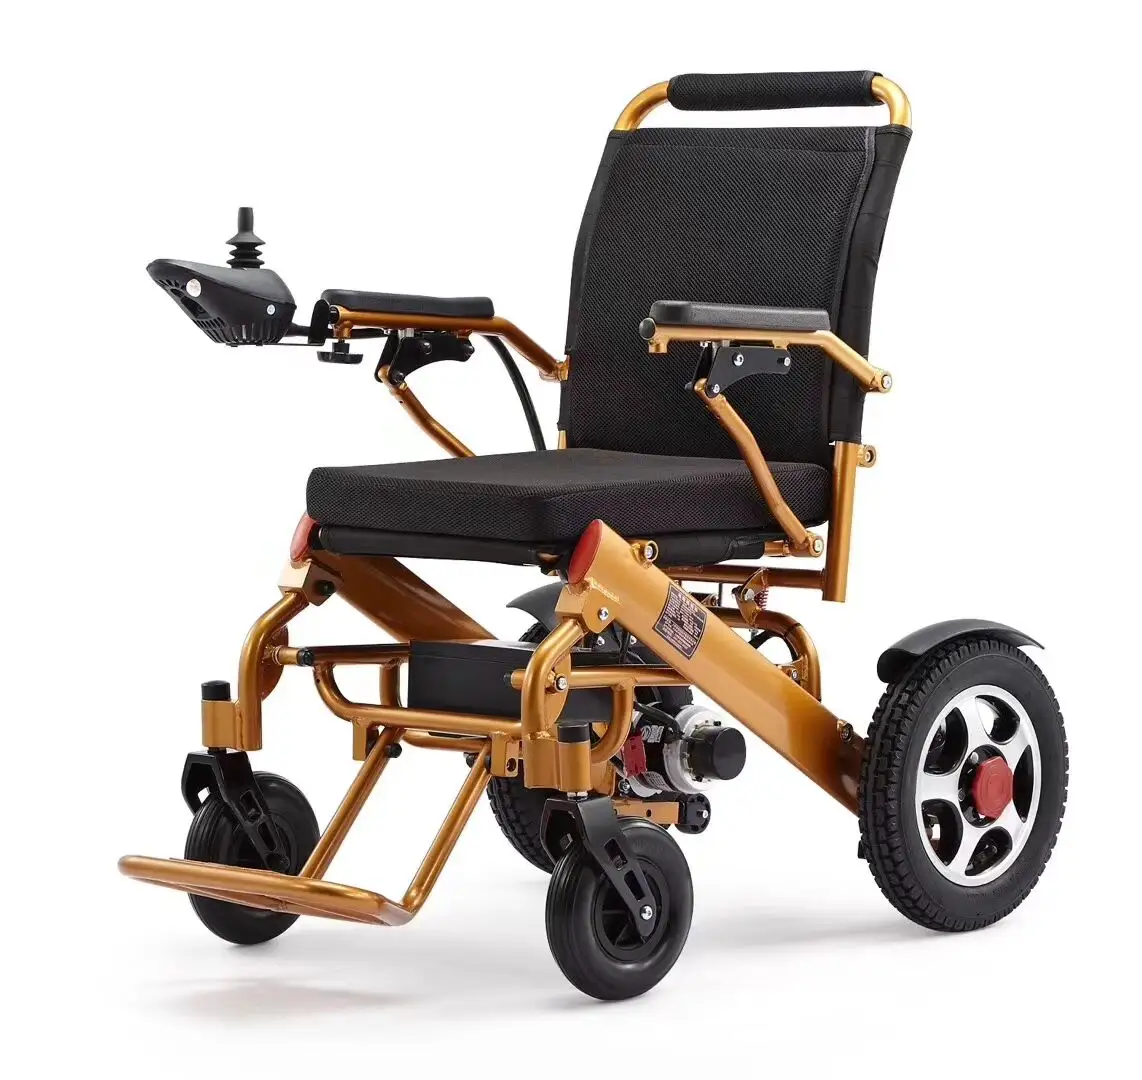 Motore elettrico per sedia a rotelle pieghevole per disabili con batteria al litio per disabili